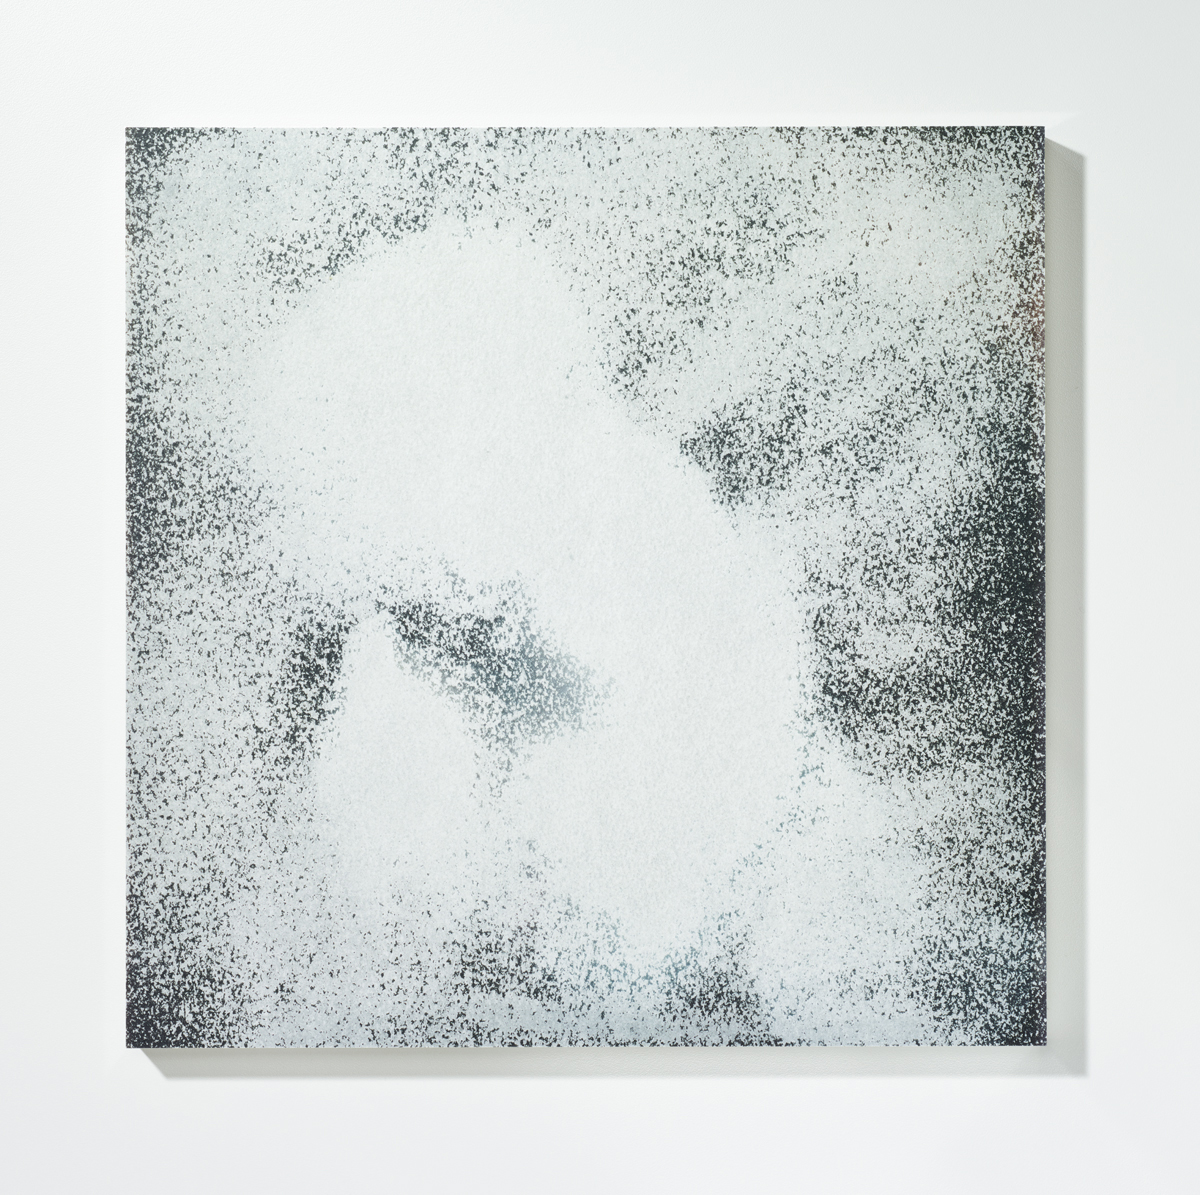 Löschung 5, 201630 x 30 cmPigmentprint, gelöscht, gefirnisst, kaschiert auf Acrylglas